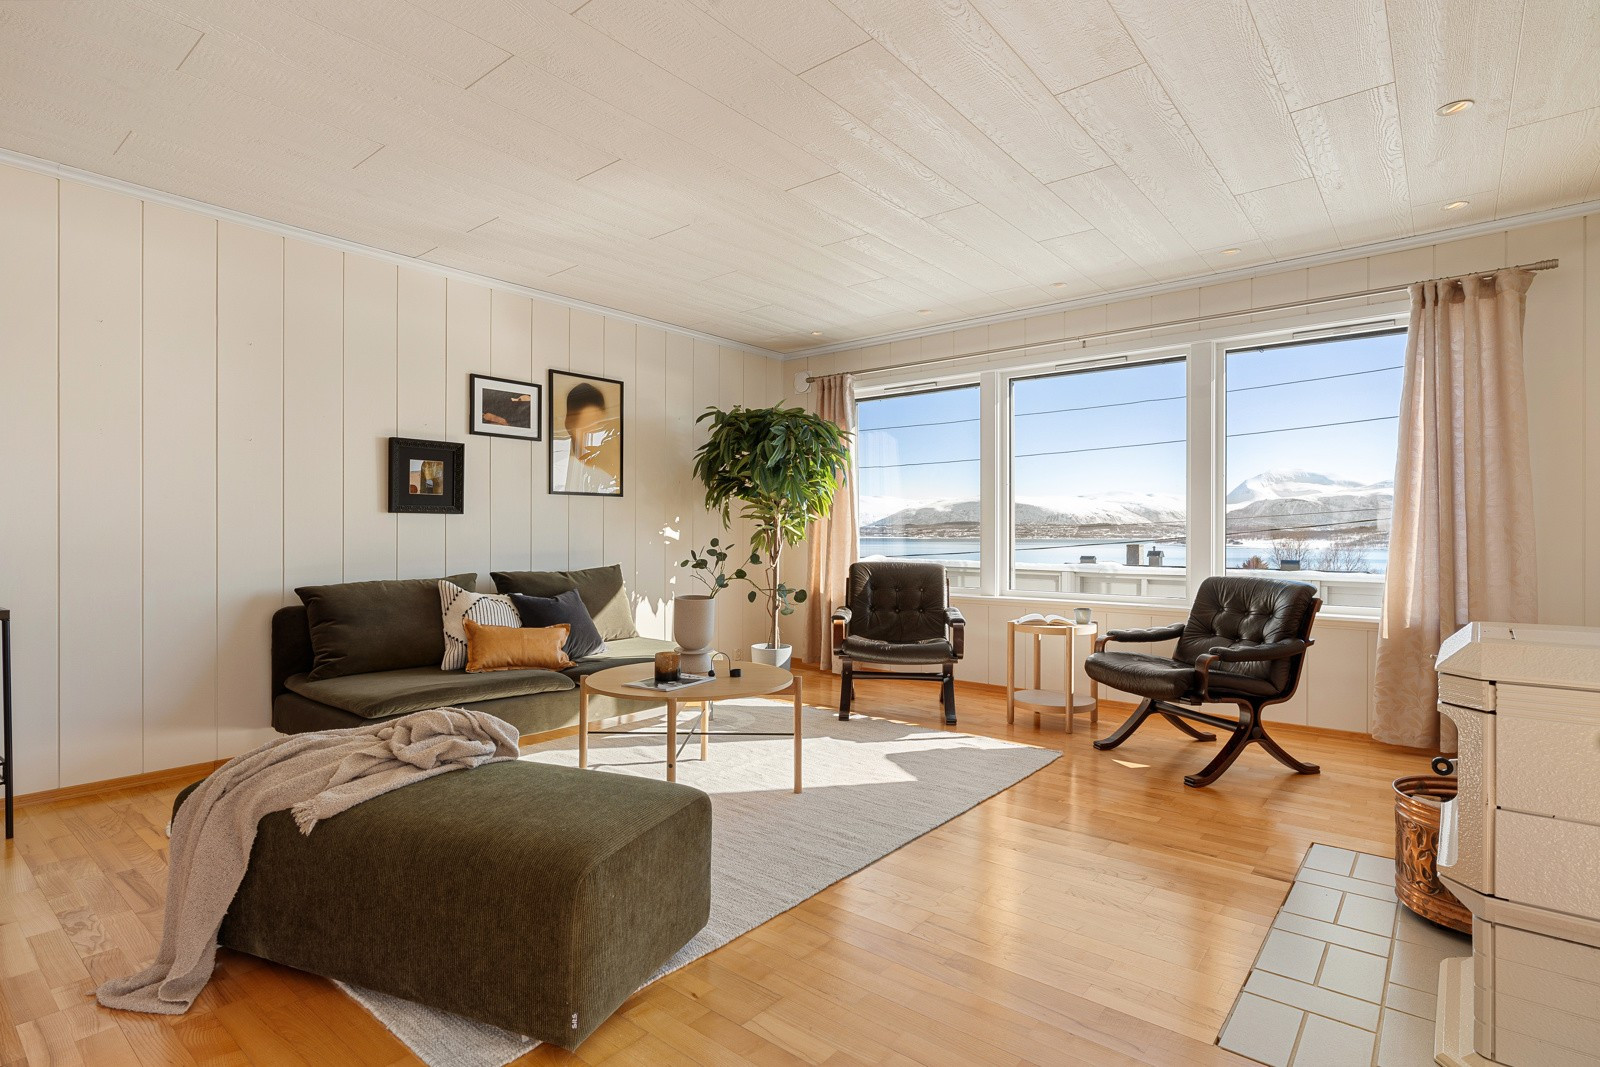 Romslig stue med gode møbleringsmuligheter. De store vindusflatene slipper inn rikelige mengder med naturlig lys i rommet.